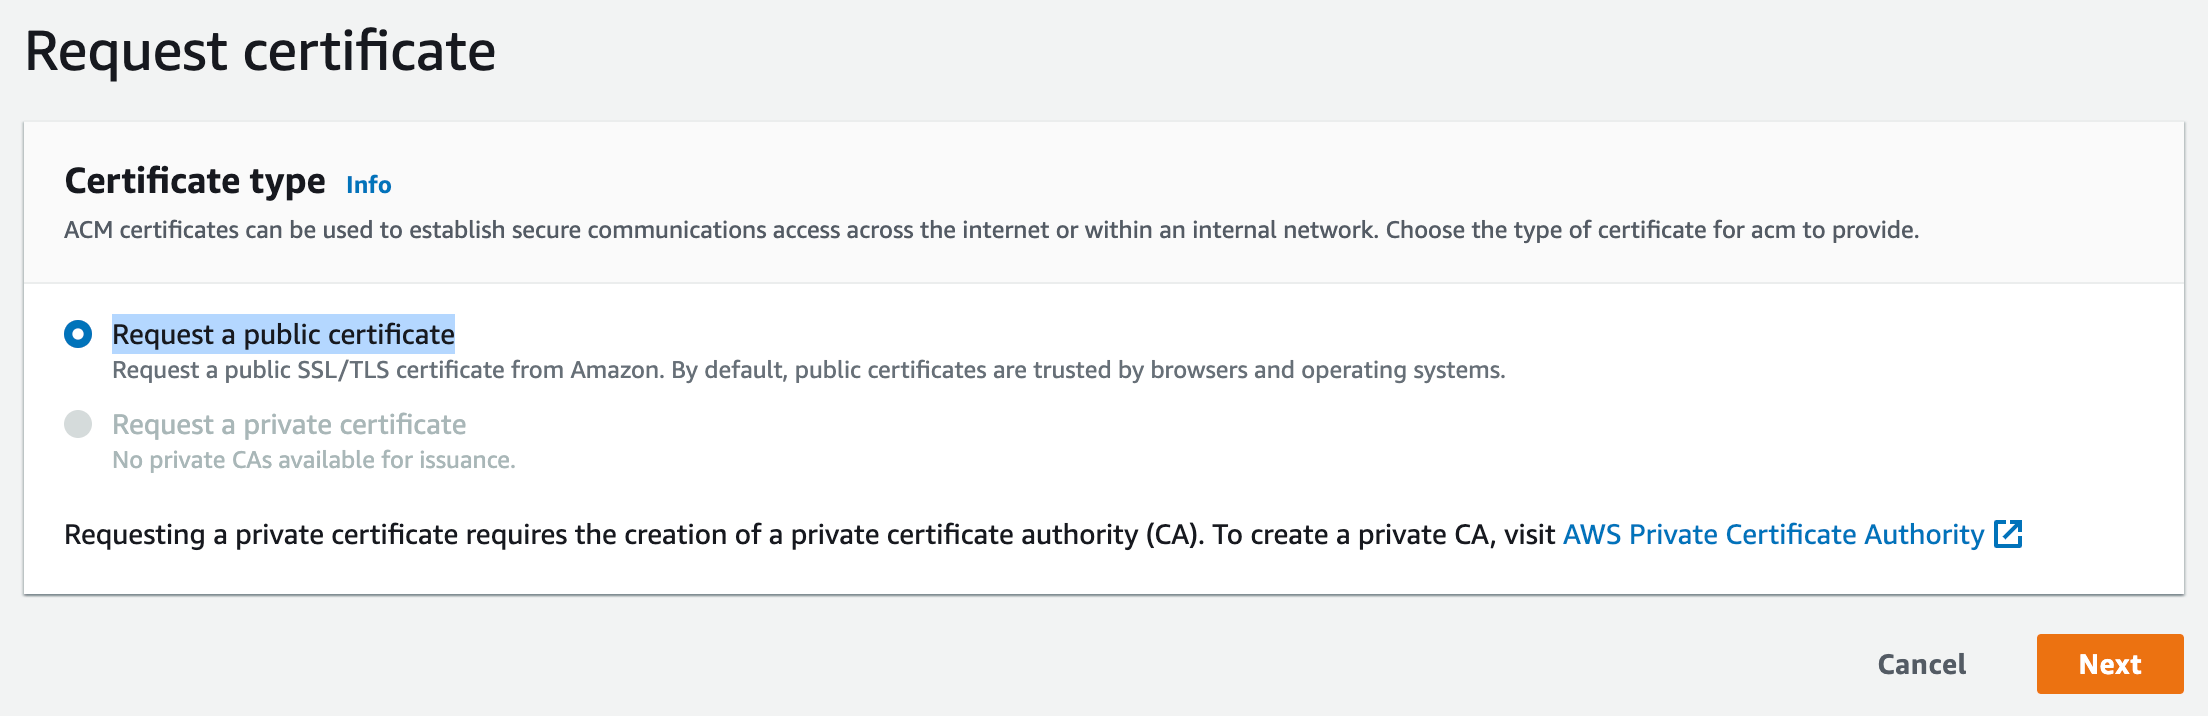 Request Public Certificate